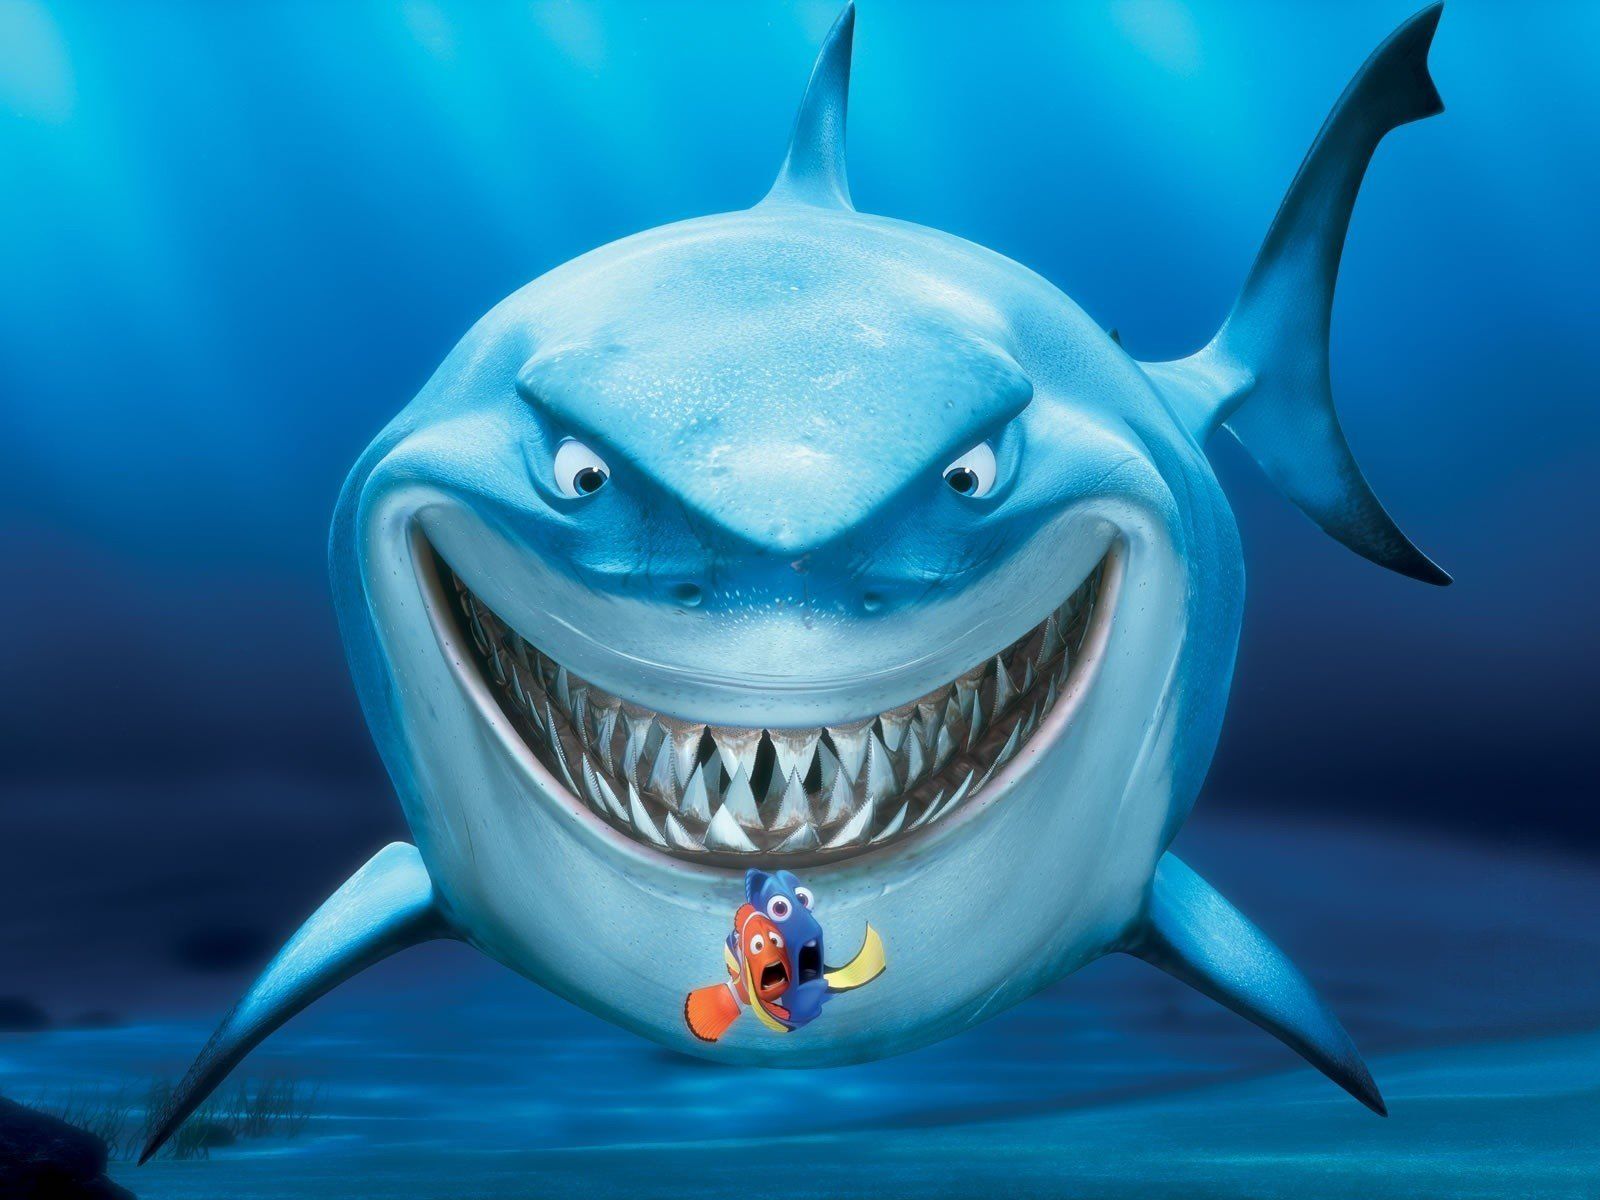 Finding Nemo sharks wallpaper | 1600x1200 | 335208 | WallpaperUP